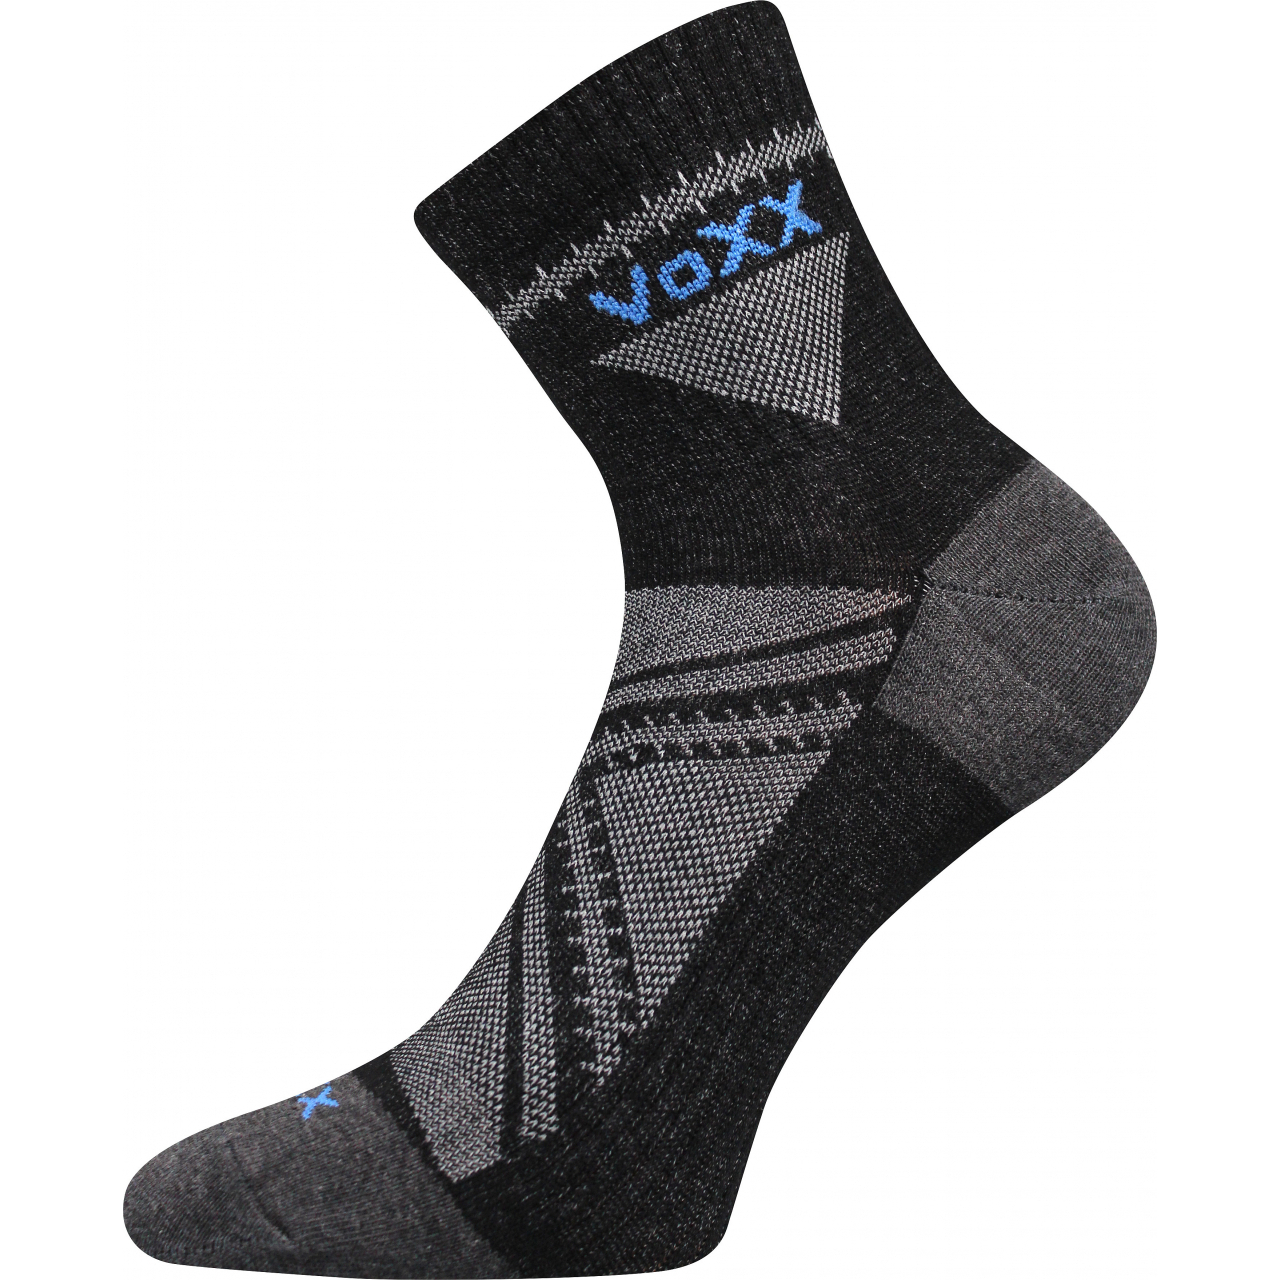 Ponožky sportovní unisex Voxx Rexon 01 - černé, 39-42